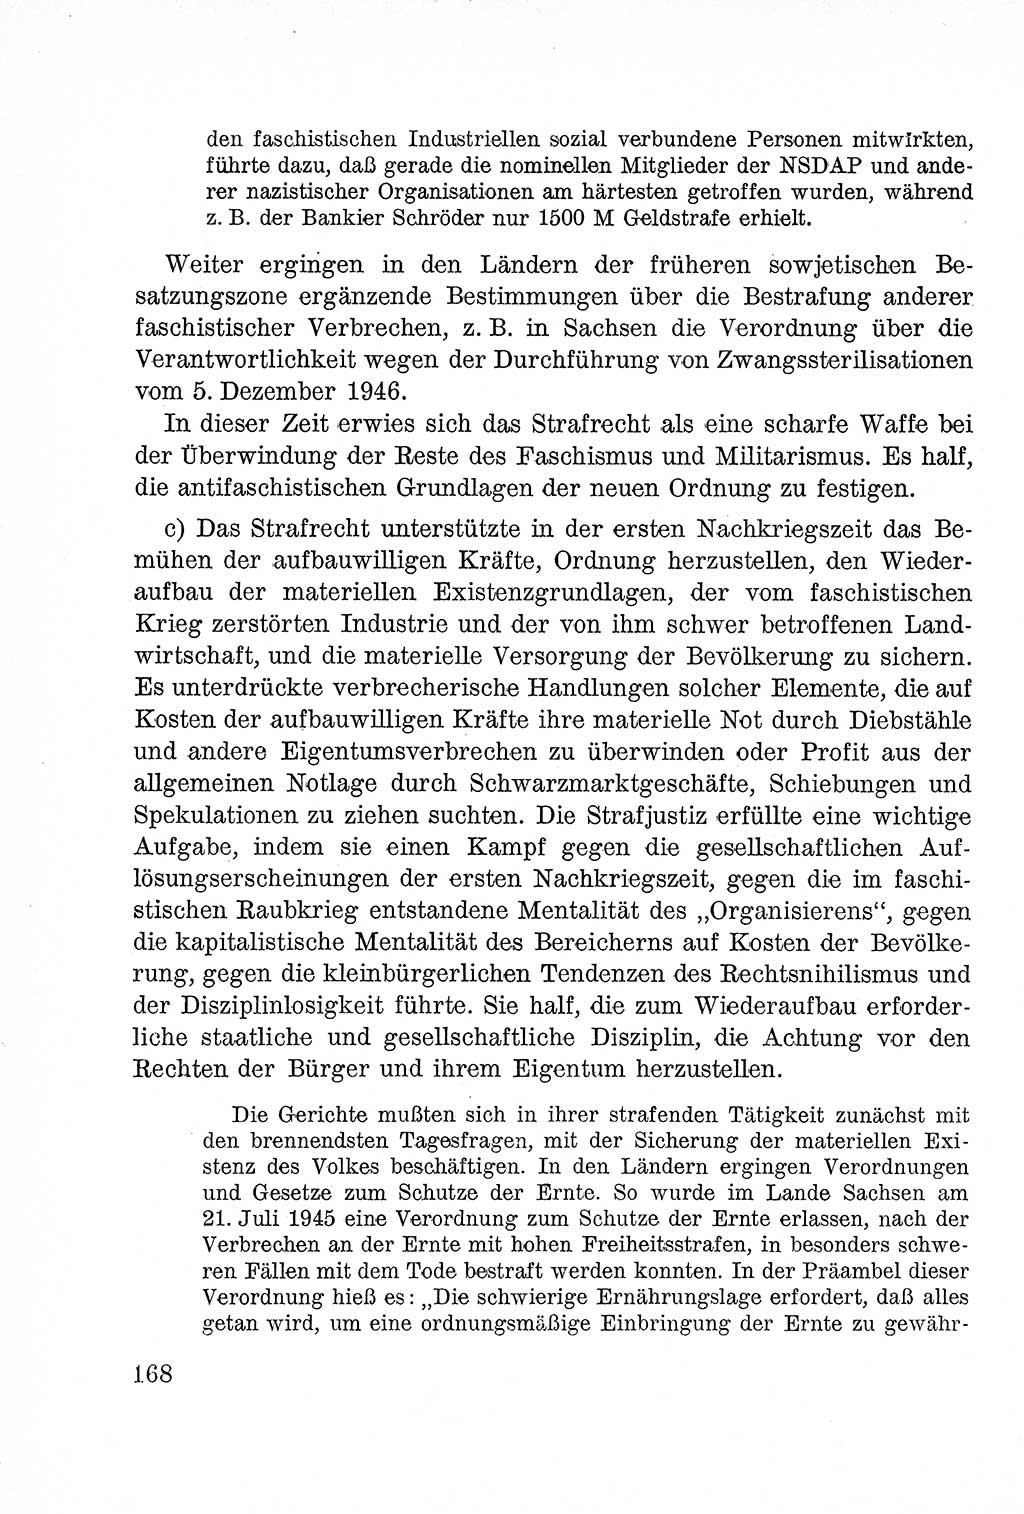 Lehrbuch des Strafrechts der Deutschen Demokratischen Republik (DDR), Allgemeiner Teil 1957, Seite 168 (Lb. Strafr. DDR AT 1957, S. 168)